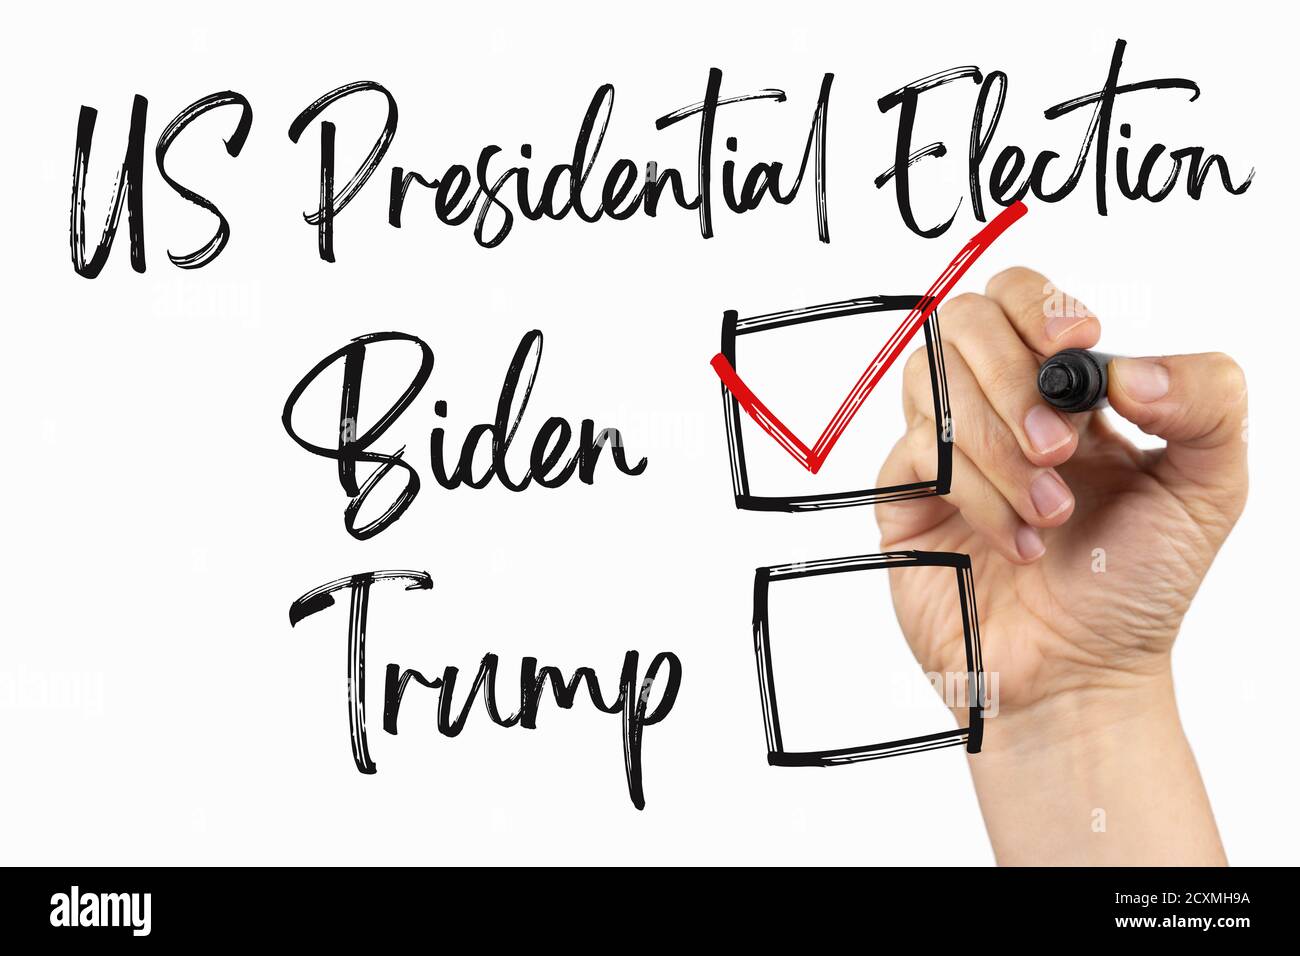 Wählen Sie einen neuen Präsidenten, US-Wahlen 2020 mit Checkbox. Doodle auf einem Whiteboard, geschrieben mit schwarzem Marker in einer Hand. Skizziertext auf Weiß einschreiben Stockfoto